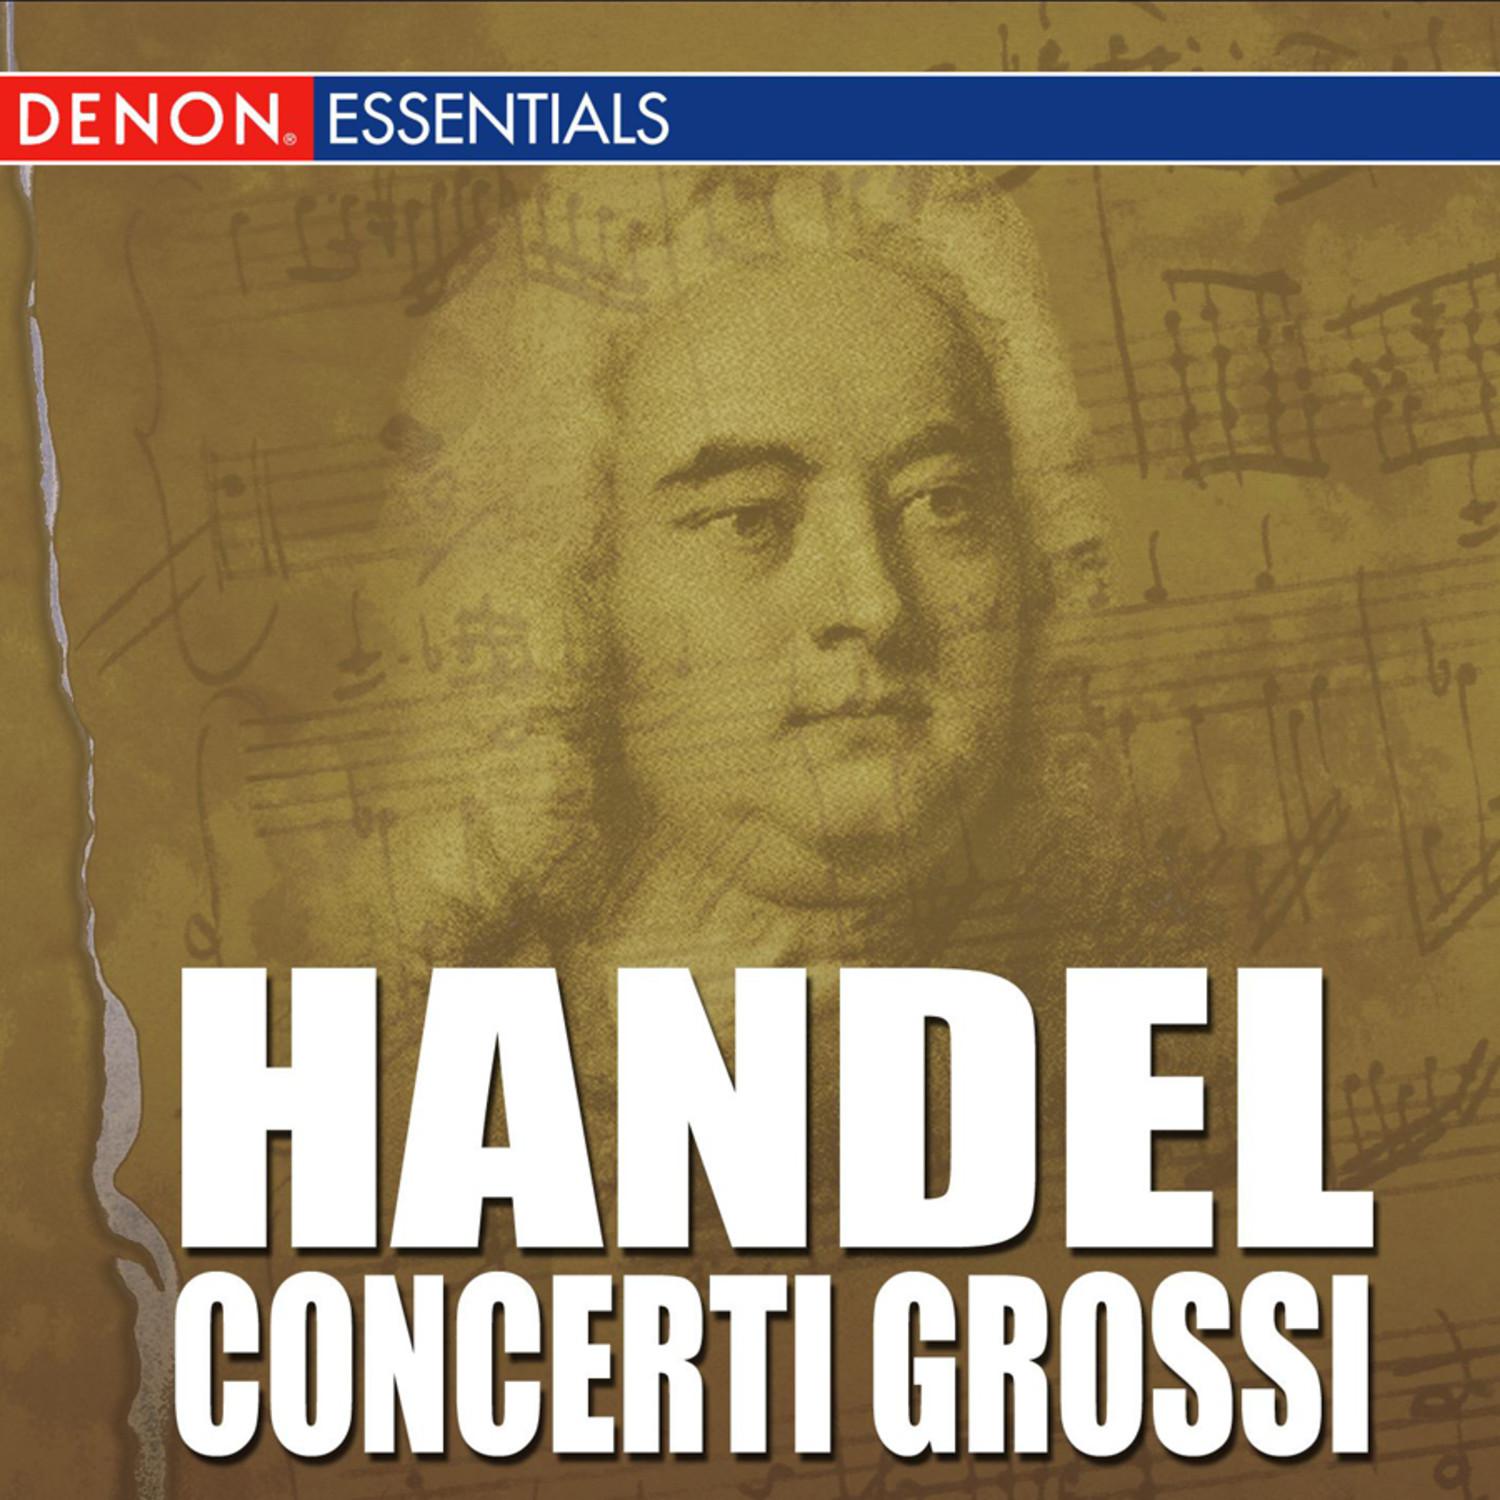 Concerto Grosso, Op. 6: No. 5 in D Major, HWV 323: III. Presto